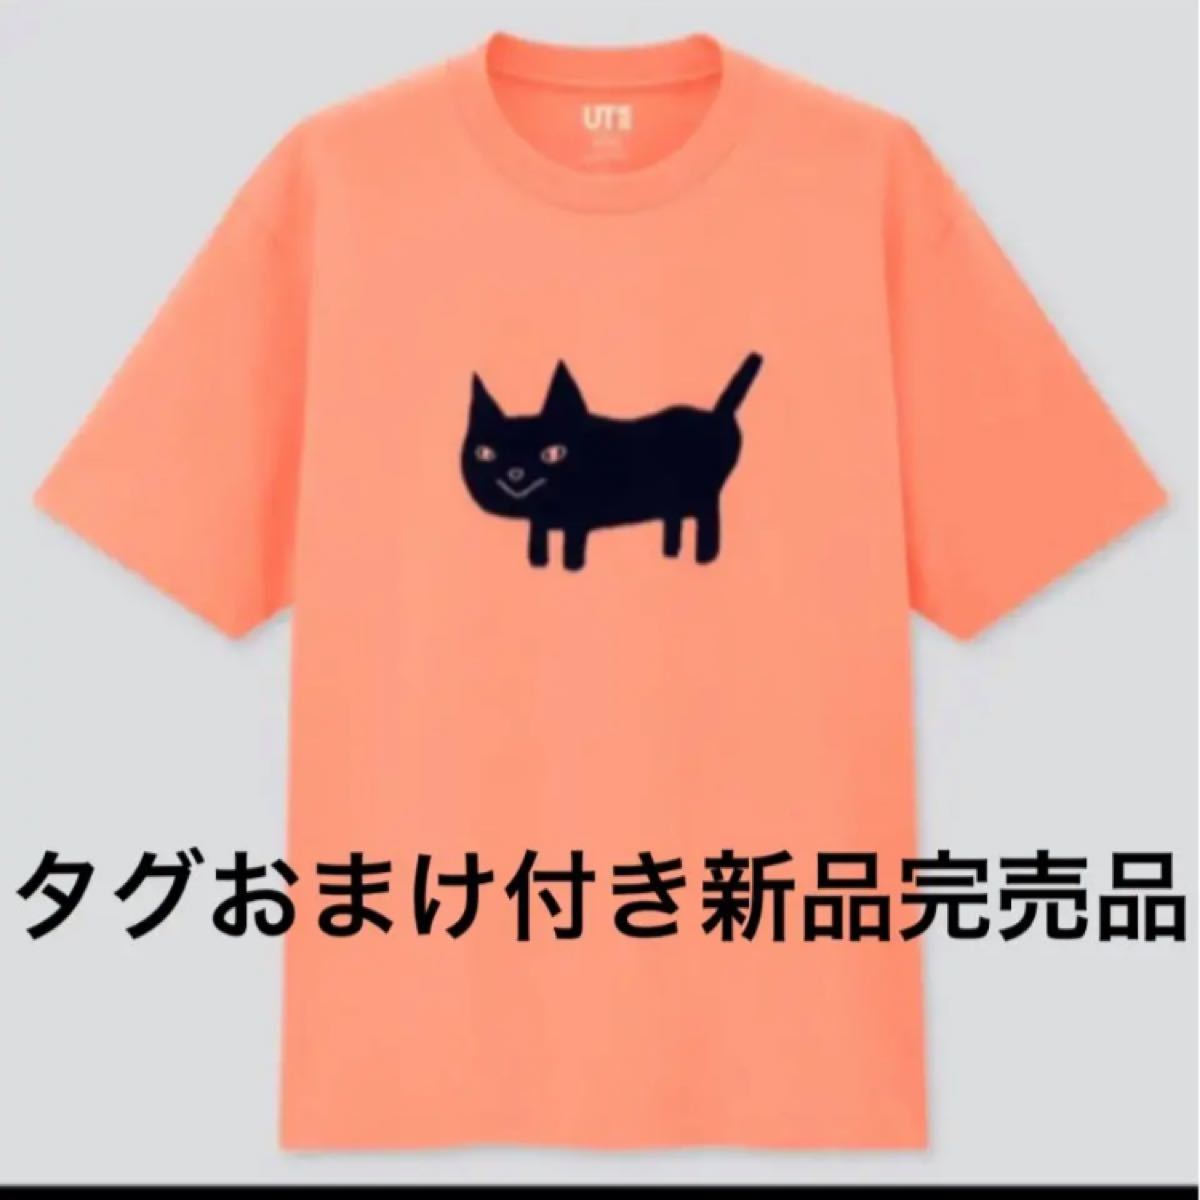 ユニクロ 米津玄師 コラボ Tシャツ UT 猫 新品 未使用 タグおまけ付き